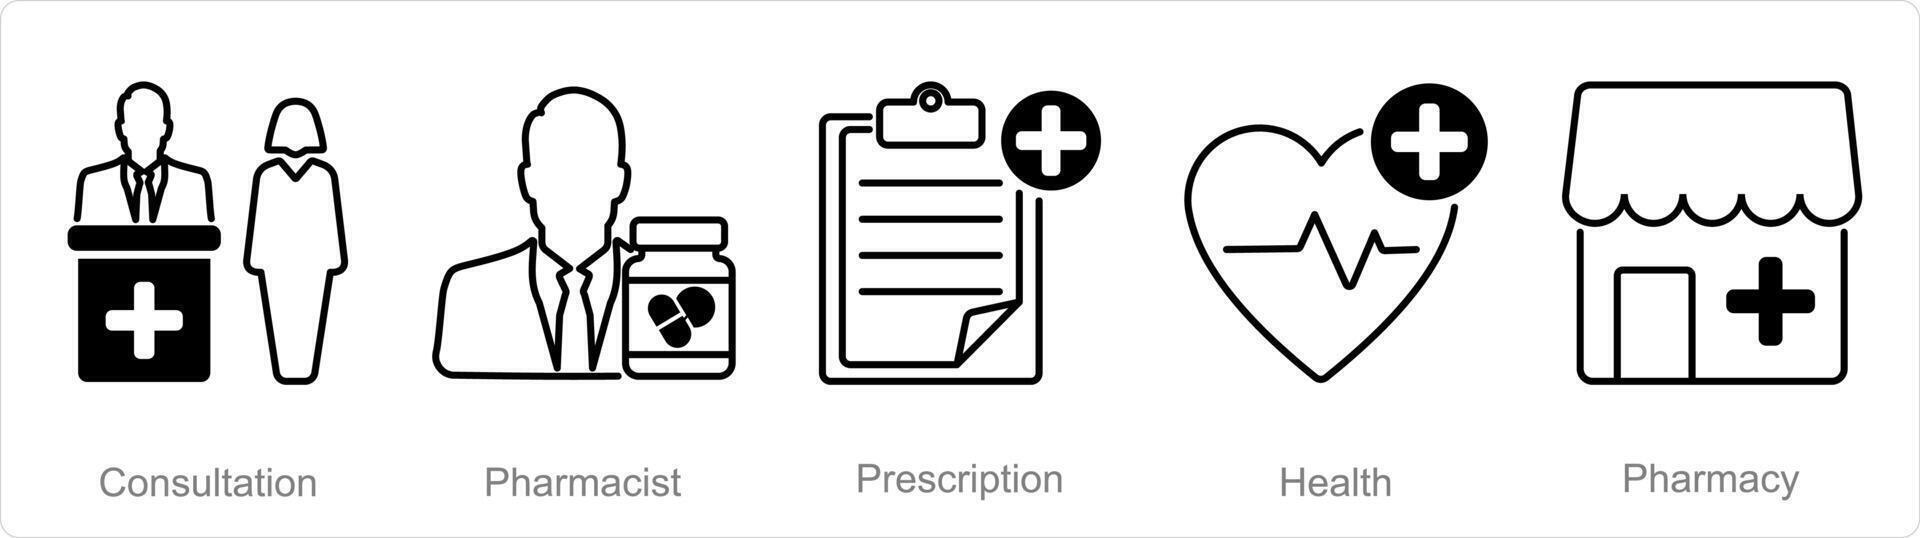 en uppsättning av 5 apotek ikoner som samråd, apotekare, recept vektor